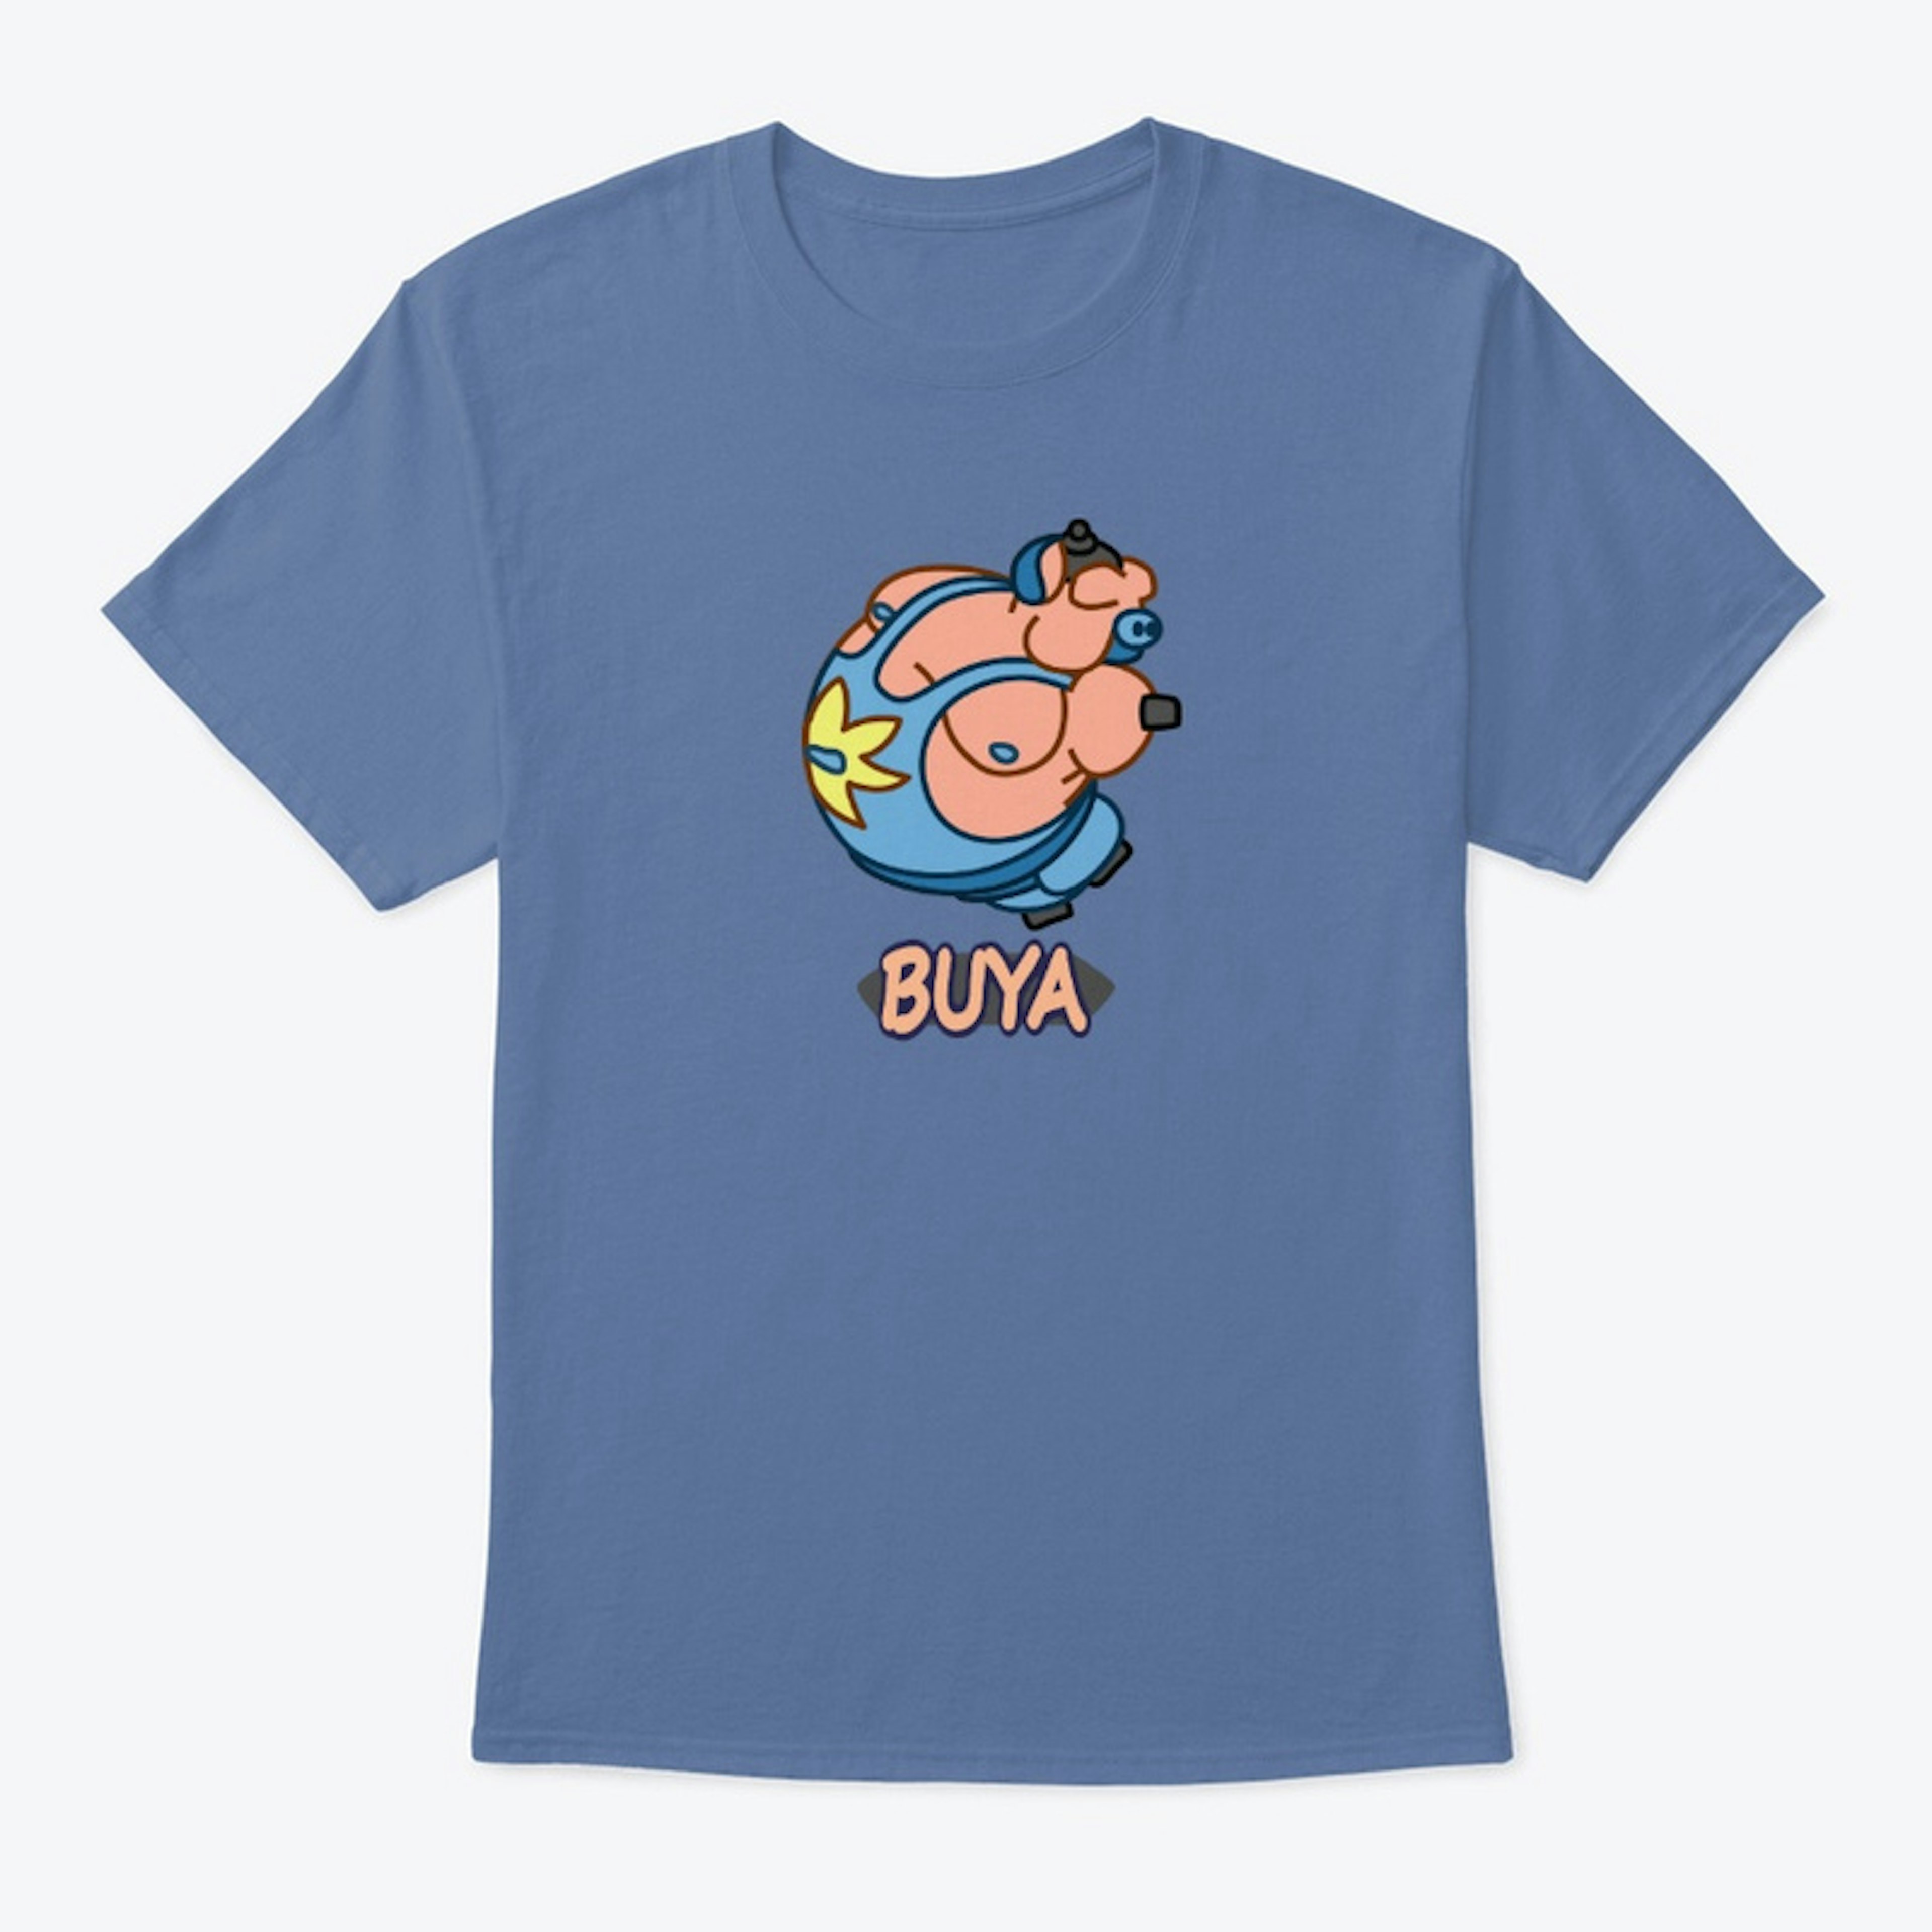 Buya shirt + Logo on back